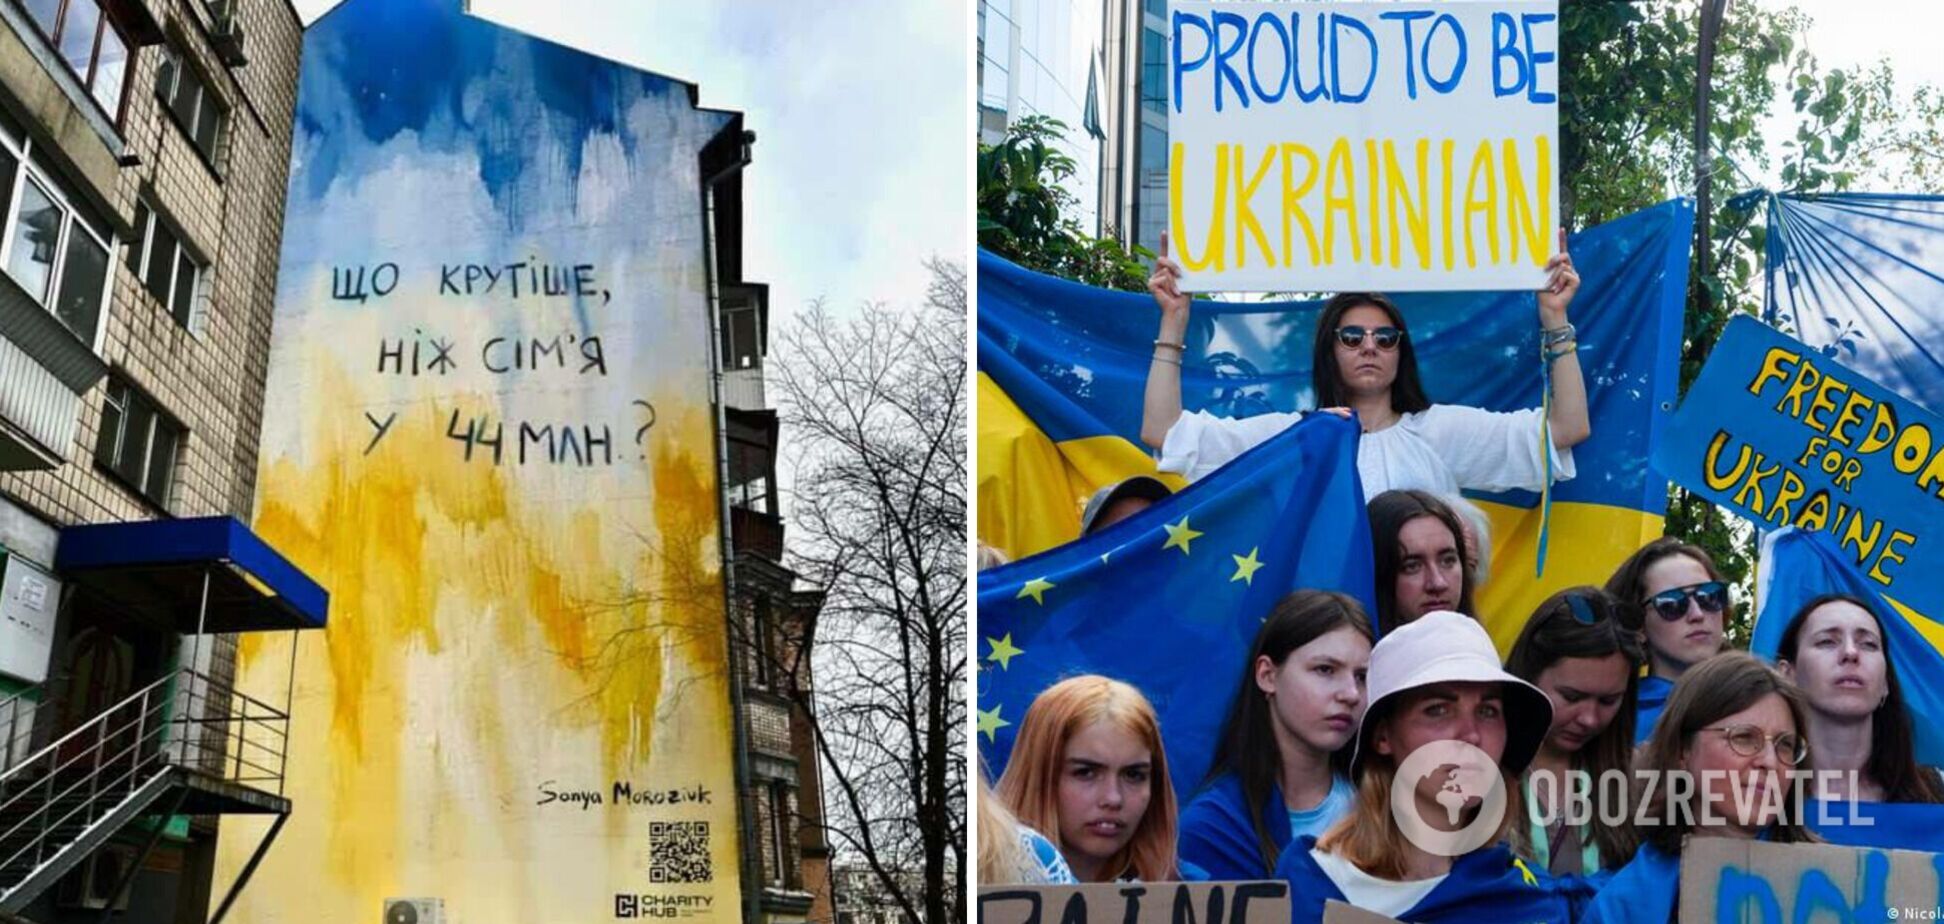 'Что круче, чем семья в 44 млн?' В Киеве появился мурал, посвященный единству украинского народа. Фото